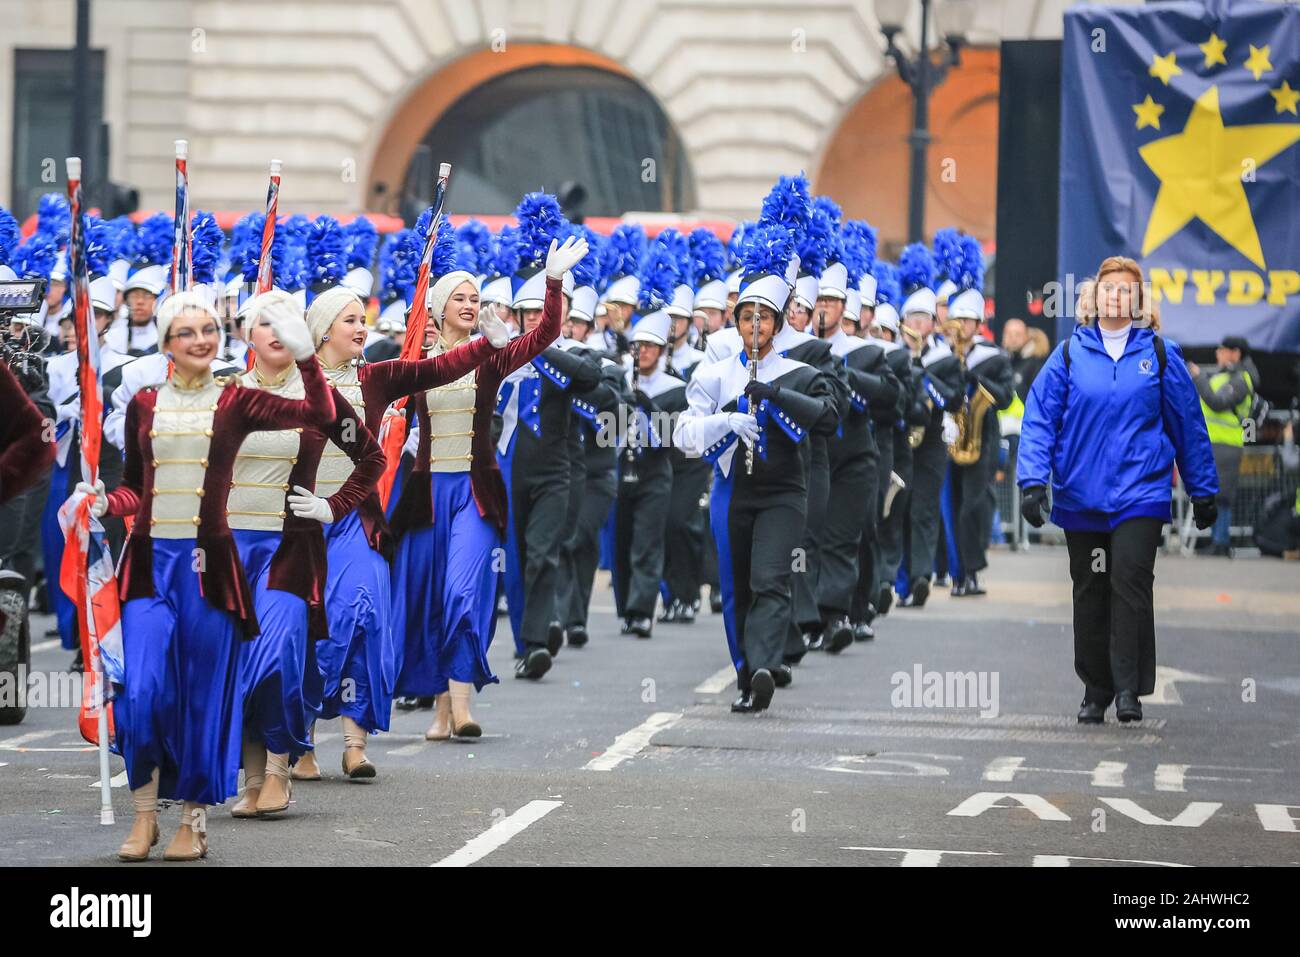 Central London, 1. Jan 2020. Ein High School Marching Band durchführen. London Ringe in 2020 mit Day Parade der jährlichen 'Londons neues Jahr', mehr liebevoll von Londonern bekannt als LNYDP, und seine spektakulären Darbietungen entlang einer Route durch das Zentrum von London. Credit: Imageplotter/Alamy leben Nachrichten Stockfoto